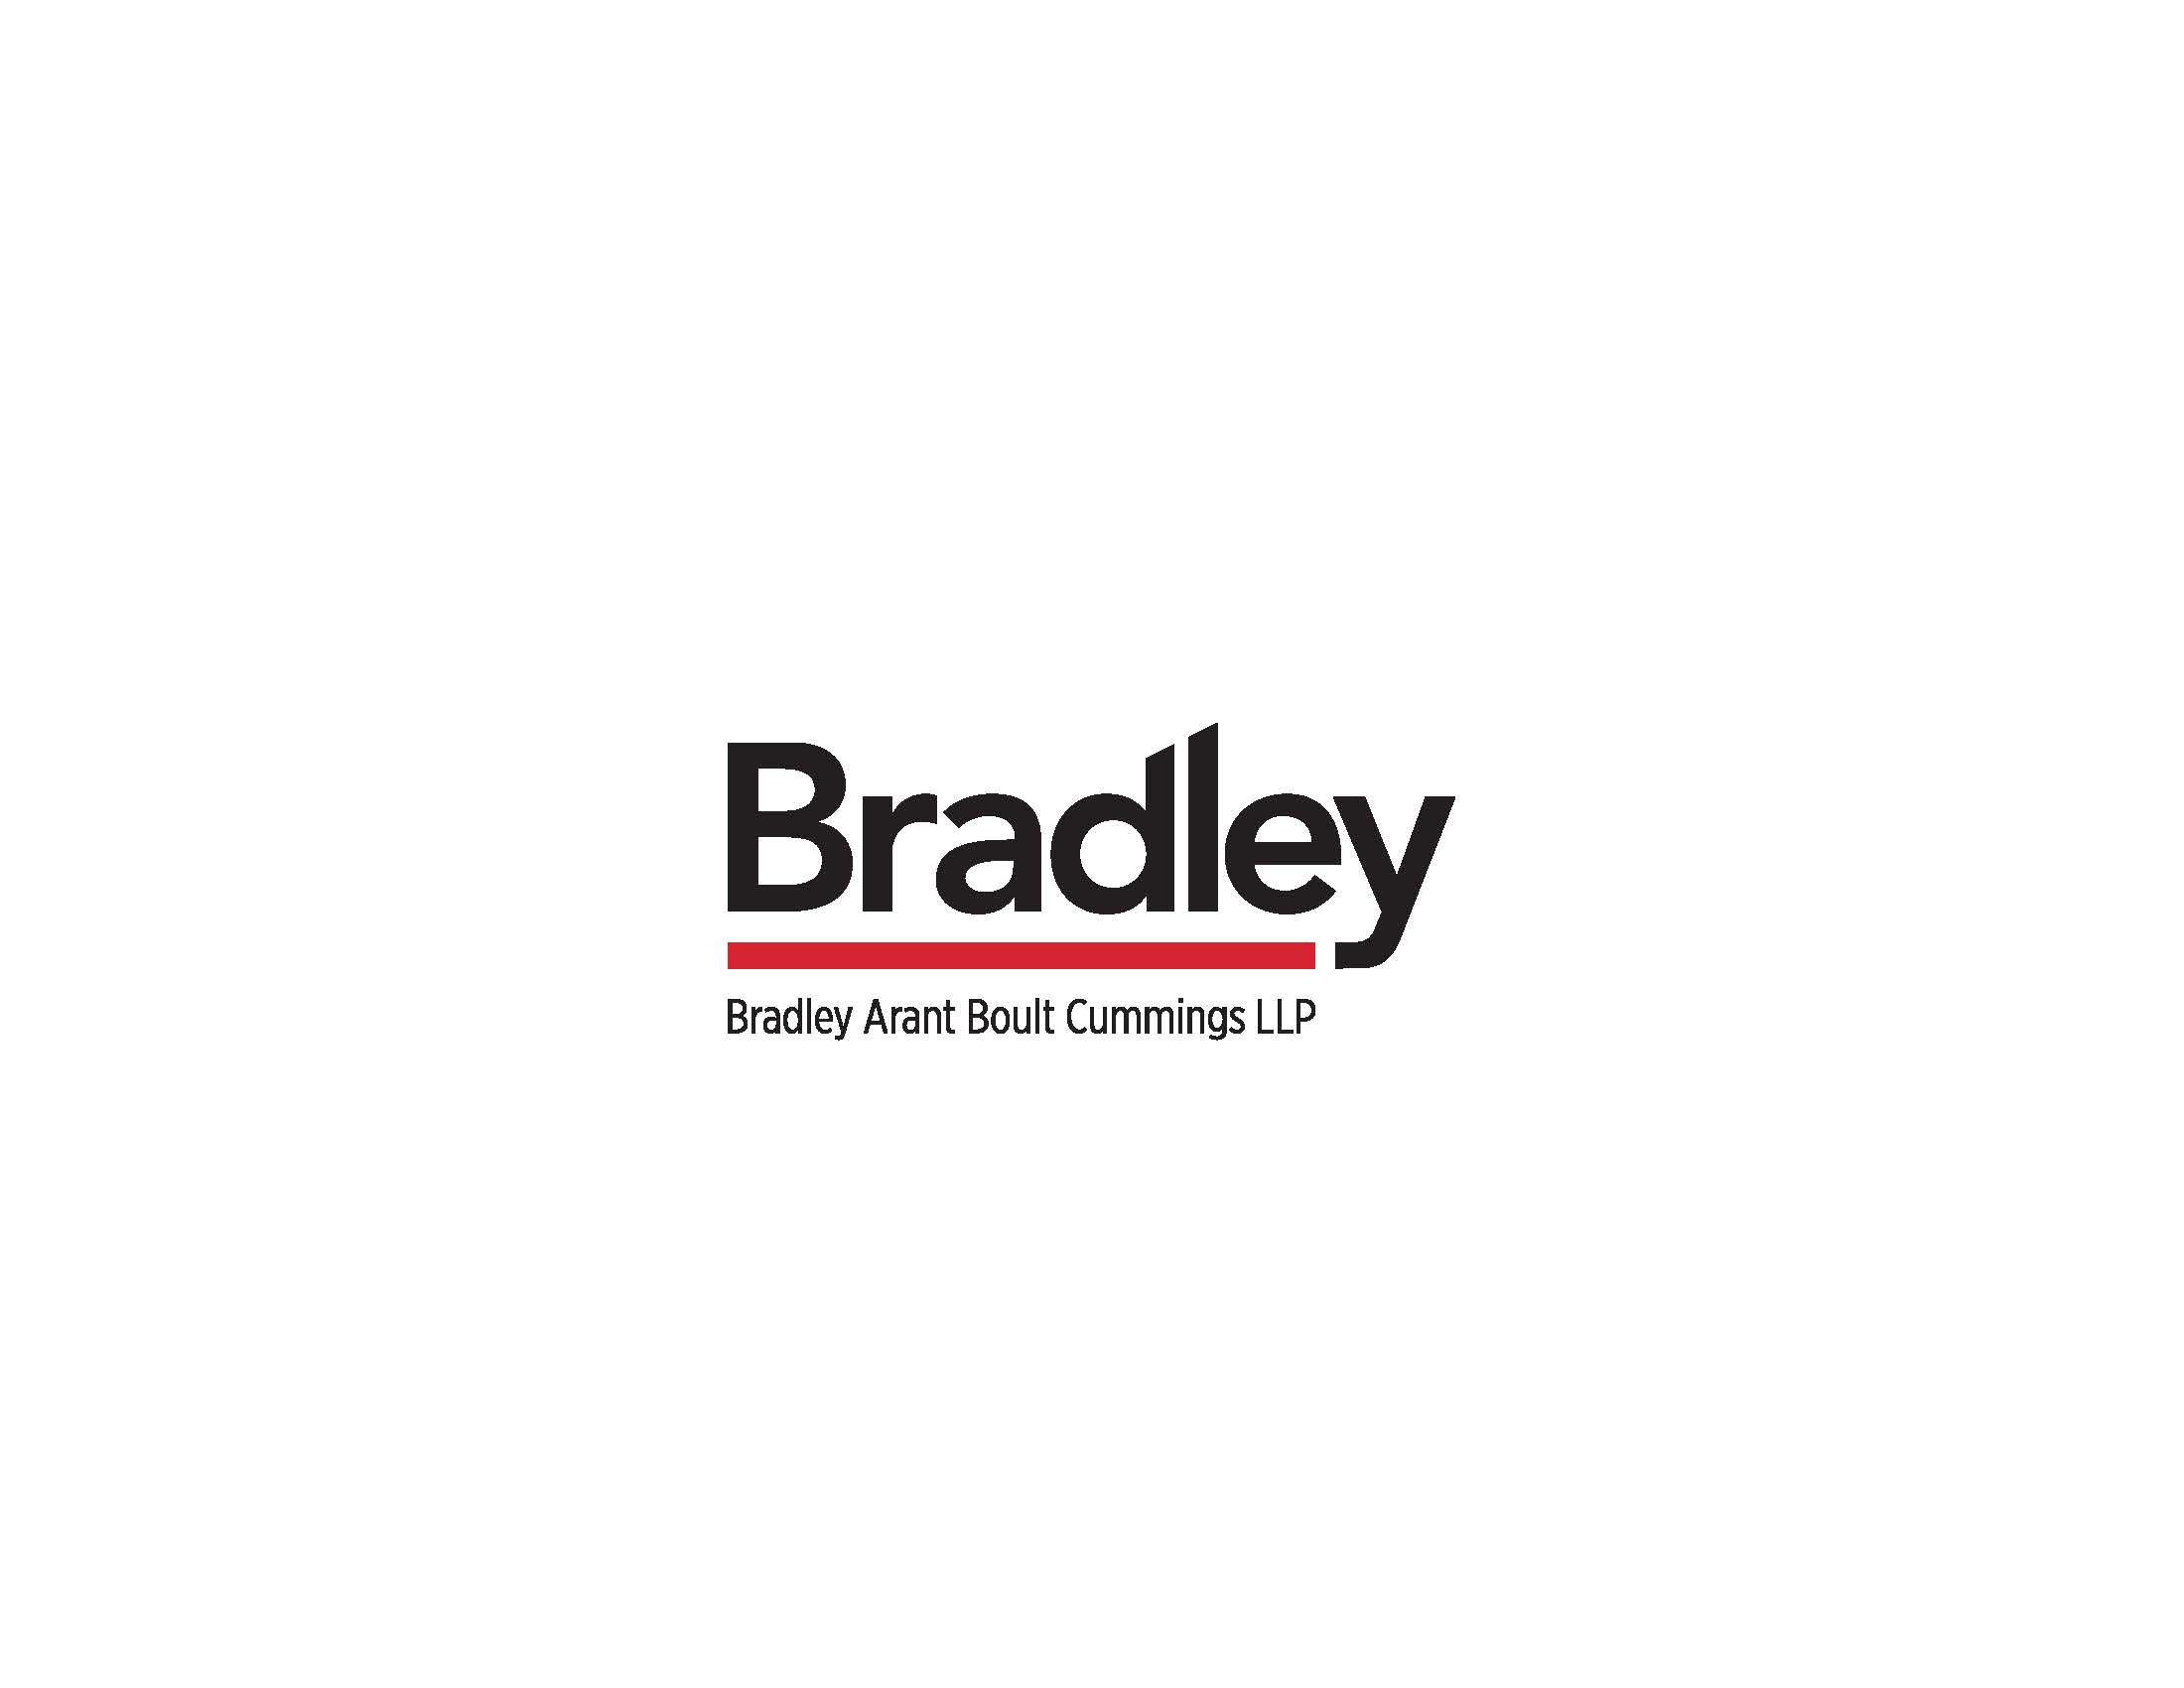 Bradley_FullName_logo_CMYK_FINAL